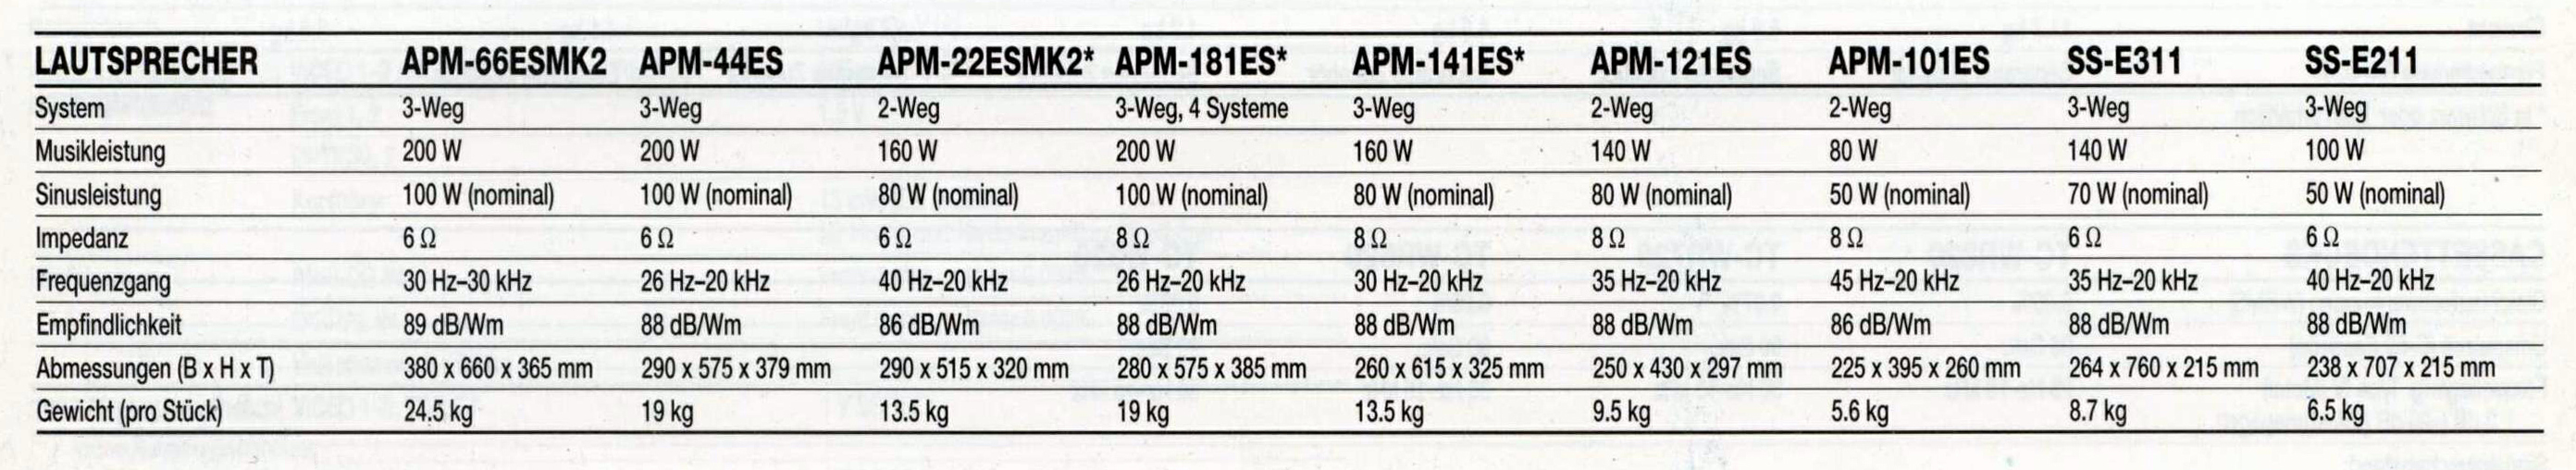 Sony APM-SS-Daten-1991.jpg